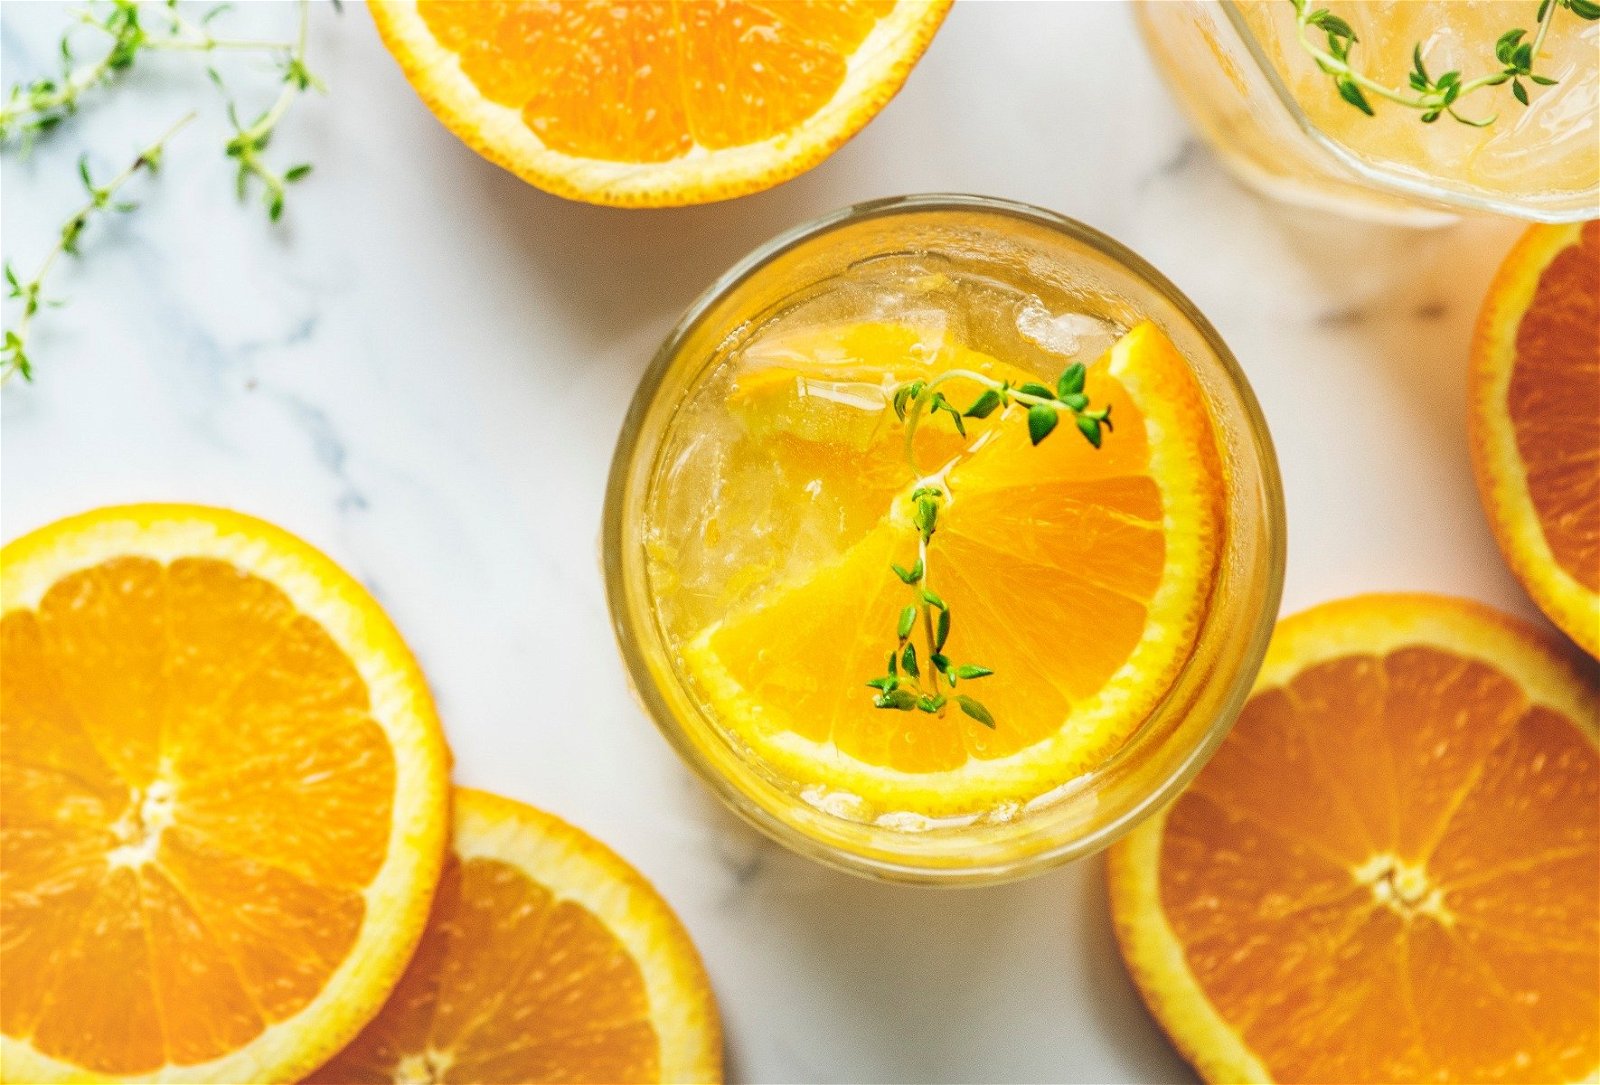 billeder af appelsiner i glas